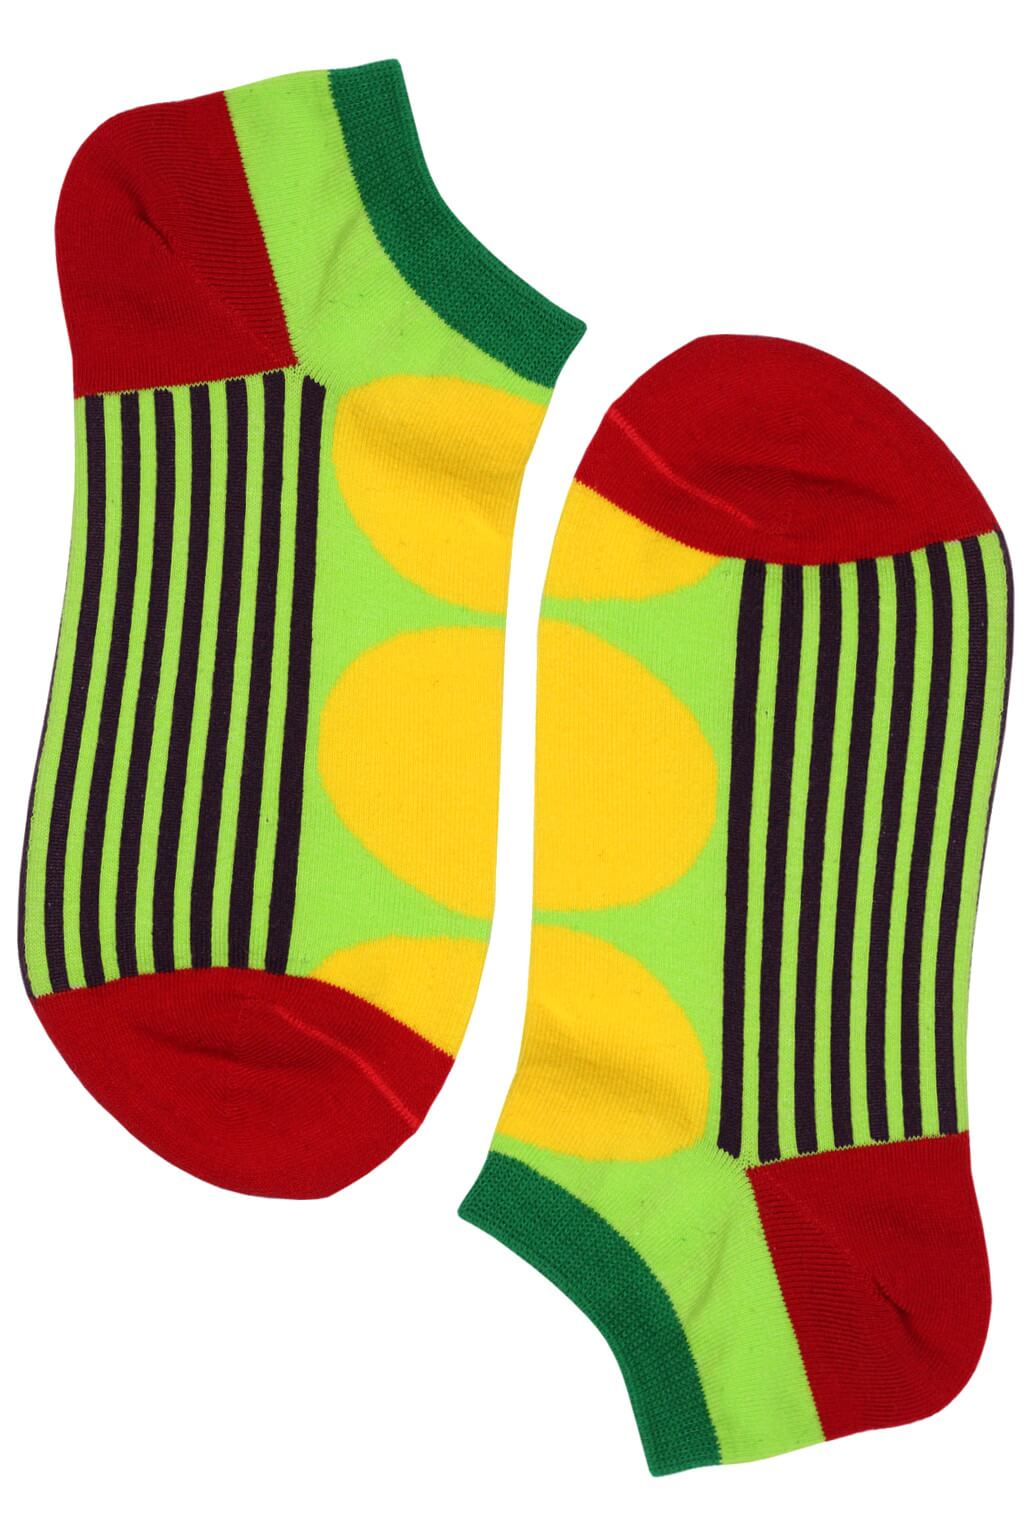 Crazy Dot kotníčkové bavlněné ponožky ECC2001 35-38 žlutá